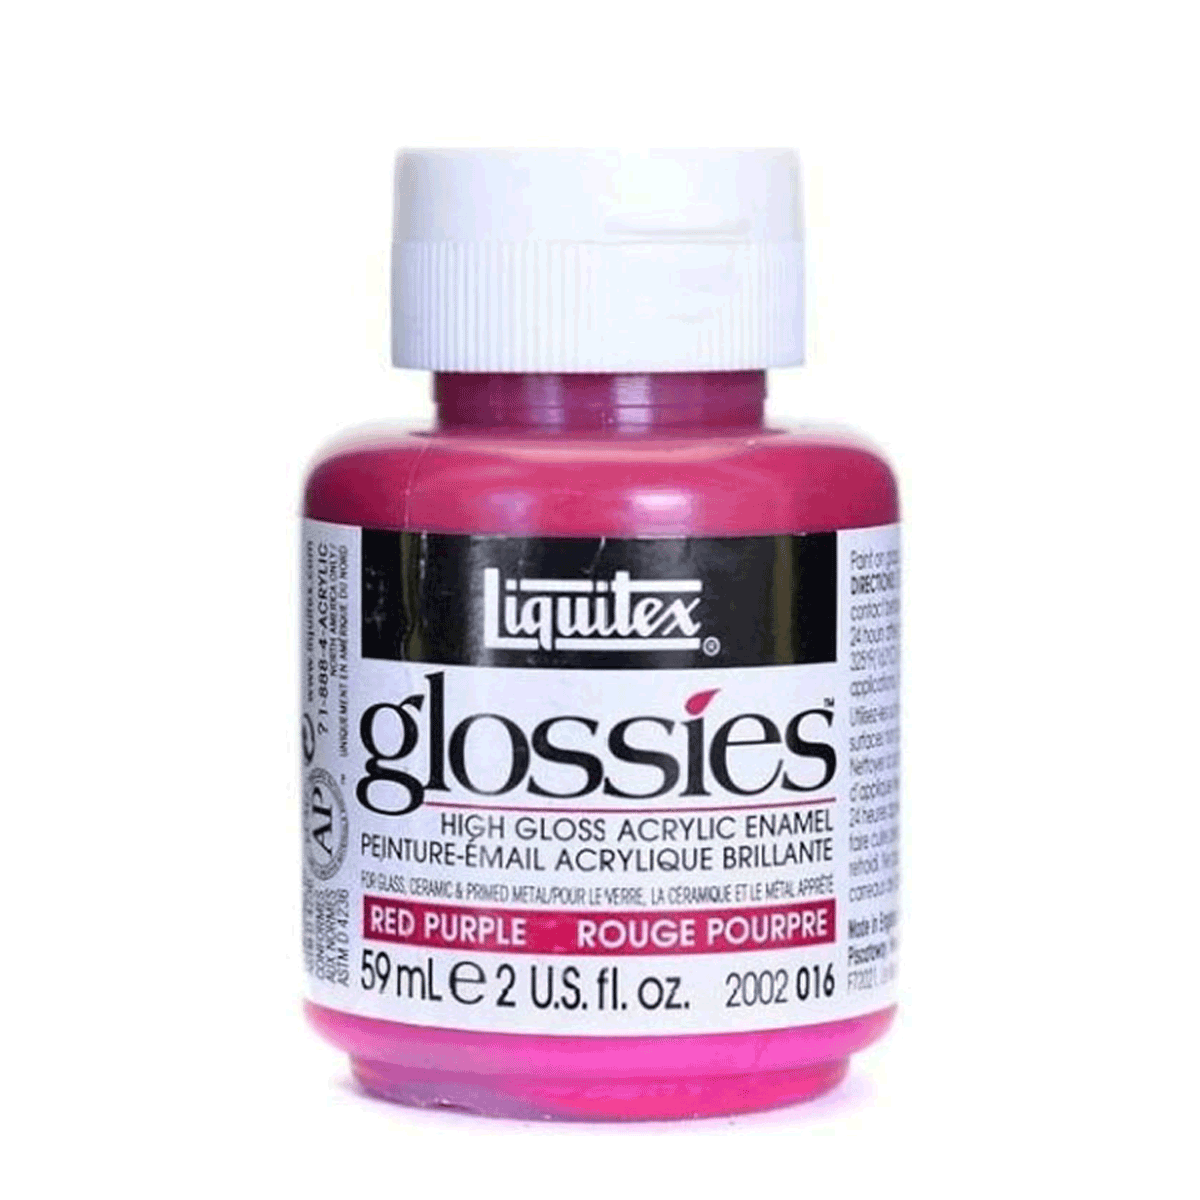 Liquitex Glossies High Gloss Acrylic Enamel - Red Purple 2-oz. (59ml) Jar